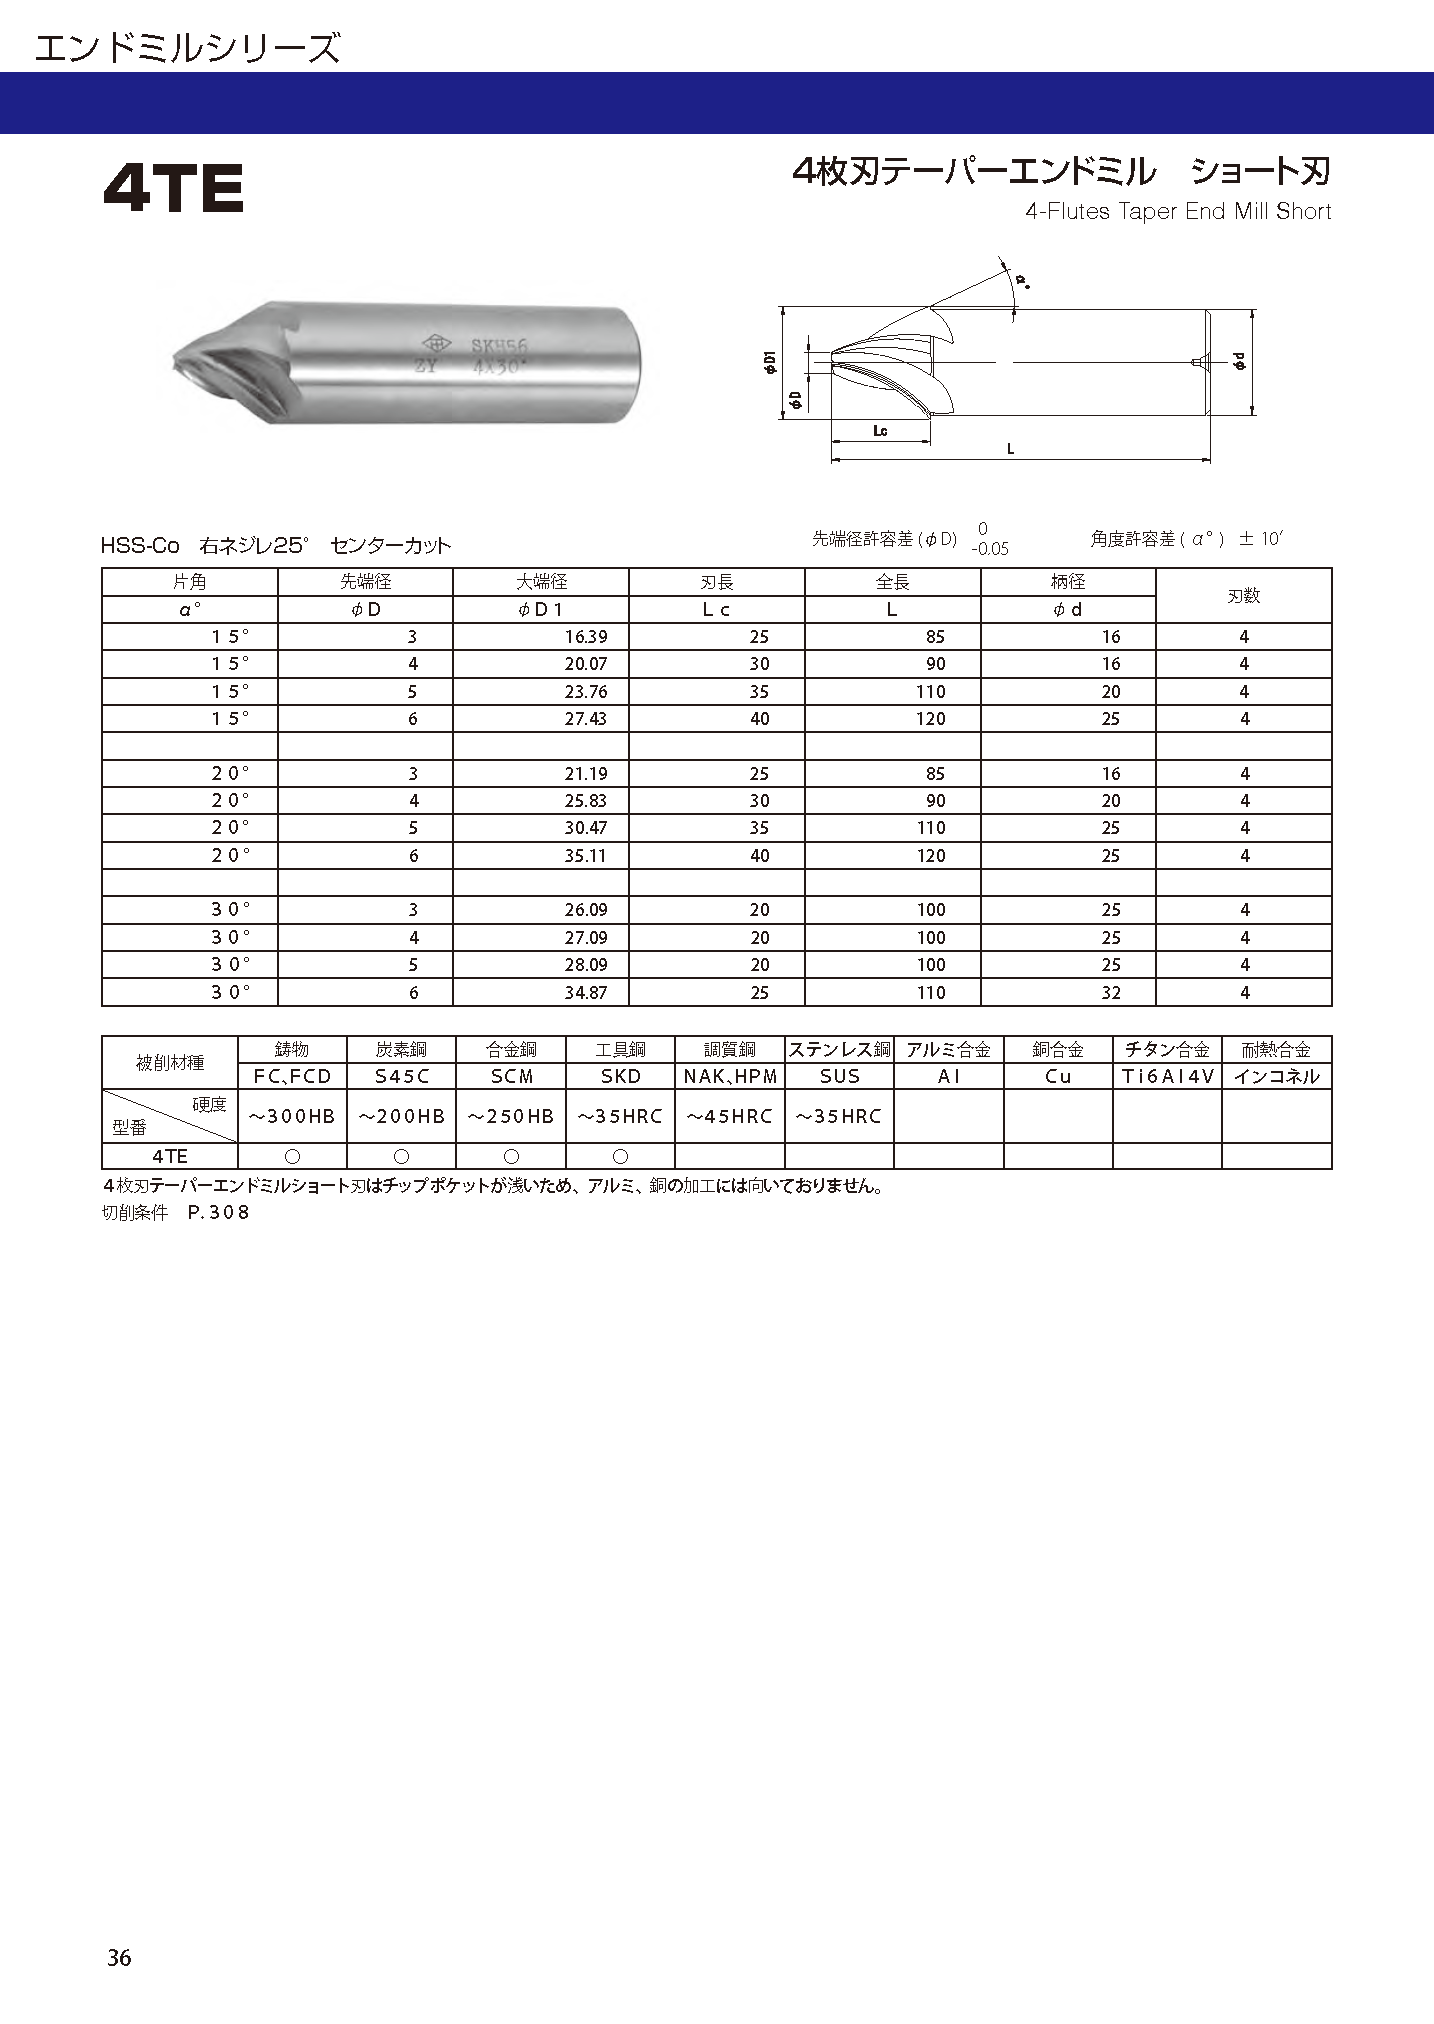 ４枚刃テーパーエンドミル ショート刃 - 大洋ツール株式会社 - ハイス 